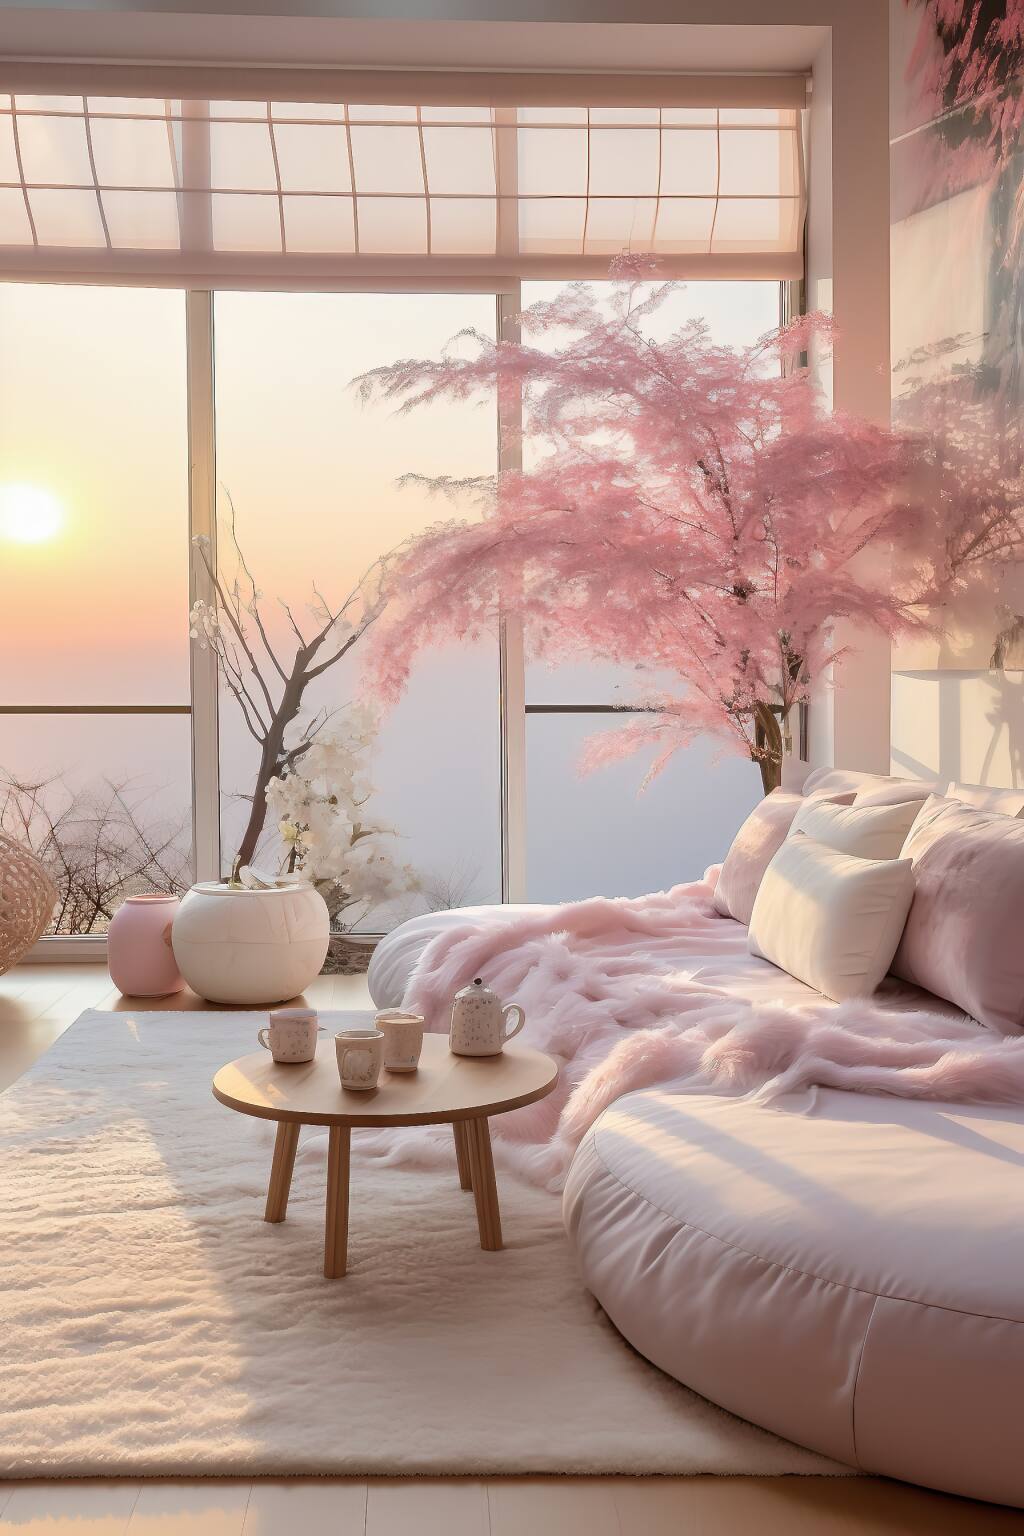 Ein Gemütliches, Romantisches Wohnzimmer Bei Sonnenuntergang Mit Rosafarbenen Lounge-Sitzmöbeln, Kirschblüten Und Einem Weichen, Elfenbeinfarbenen Teppich, Der Ein Romantisches Zen-Gefühl Verkörpert.